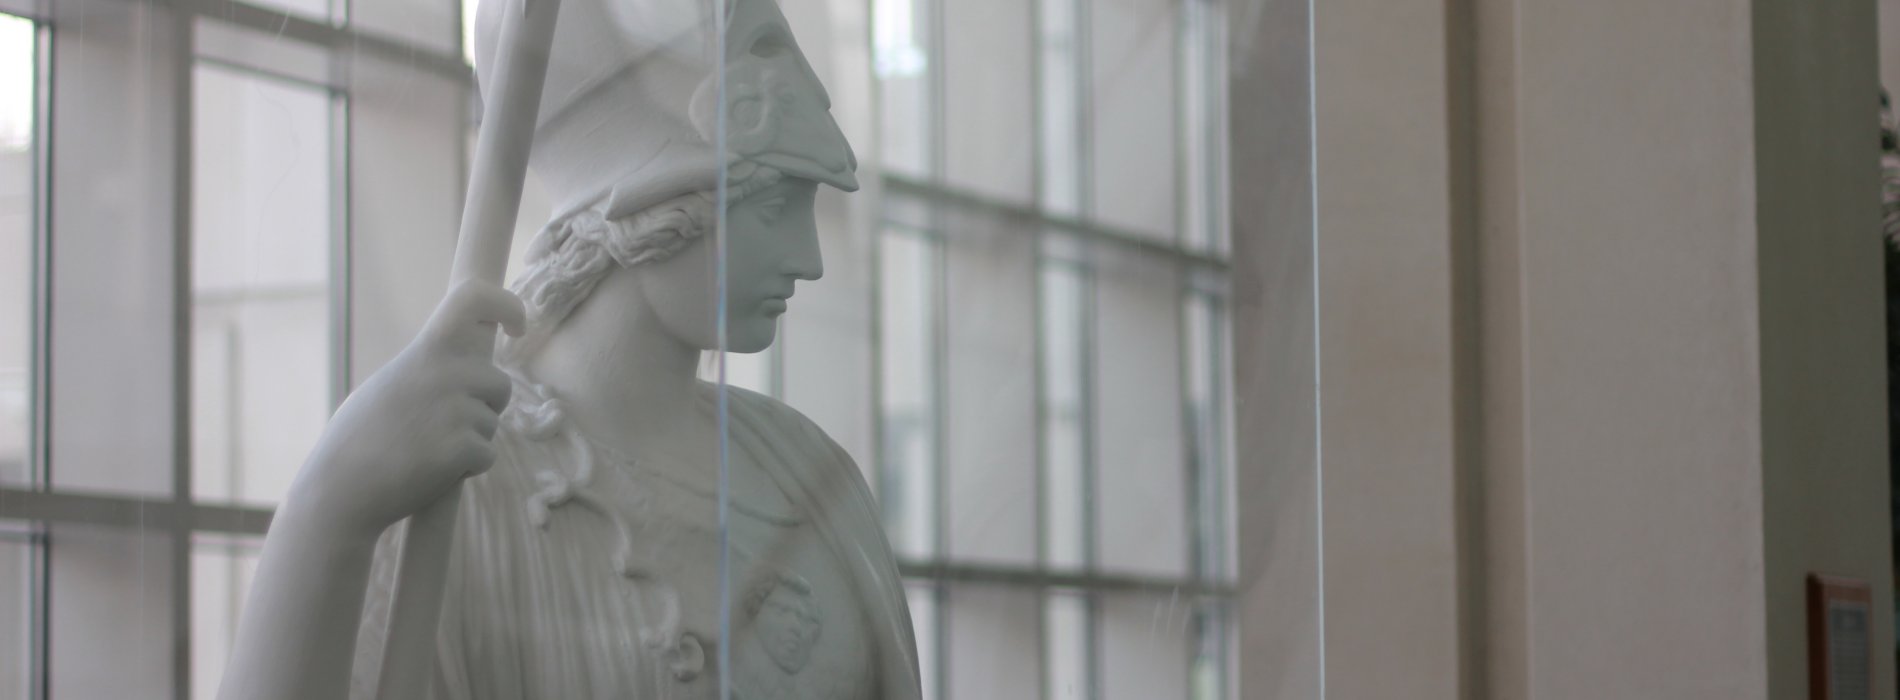 A white plaster statue of Minerva, the Roman goddess of wisdom